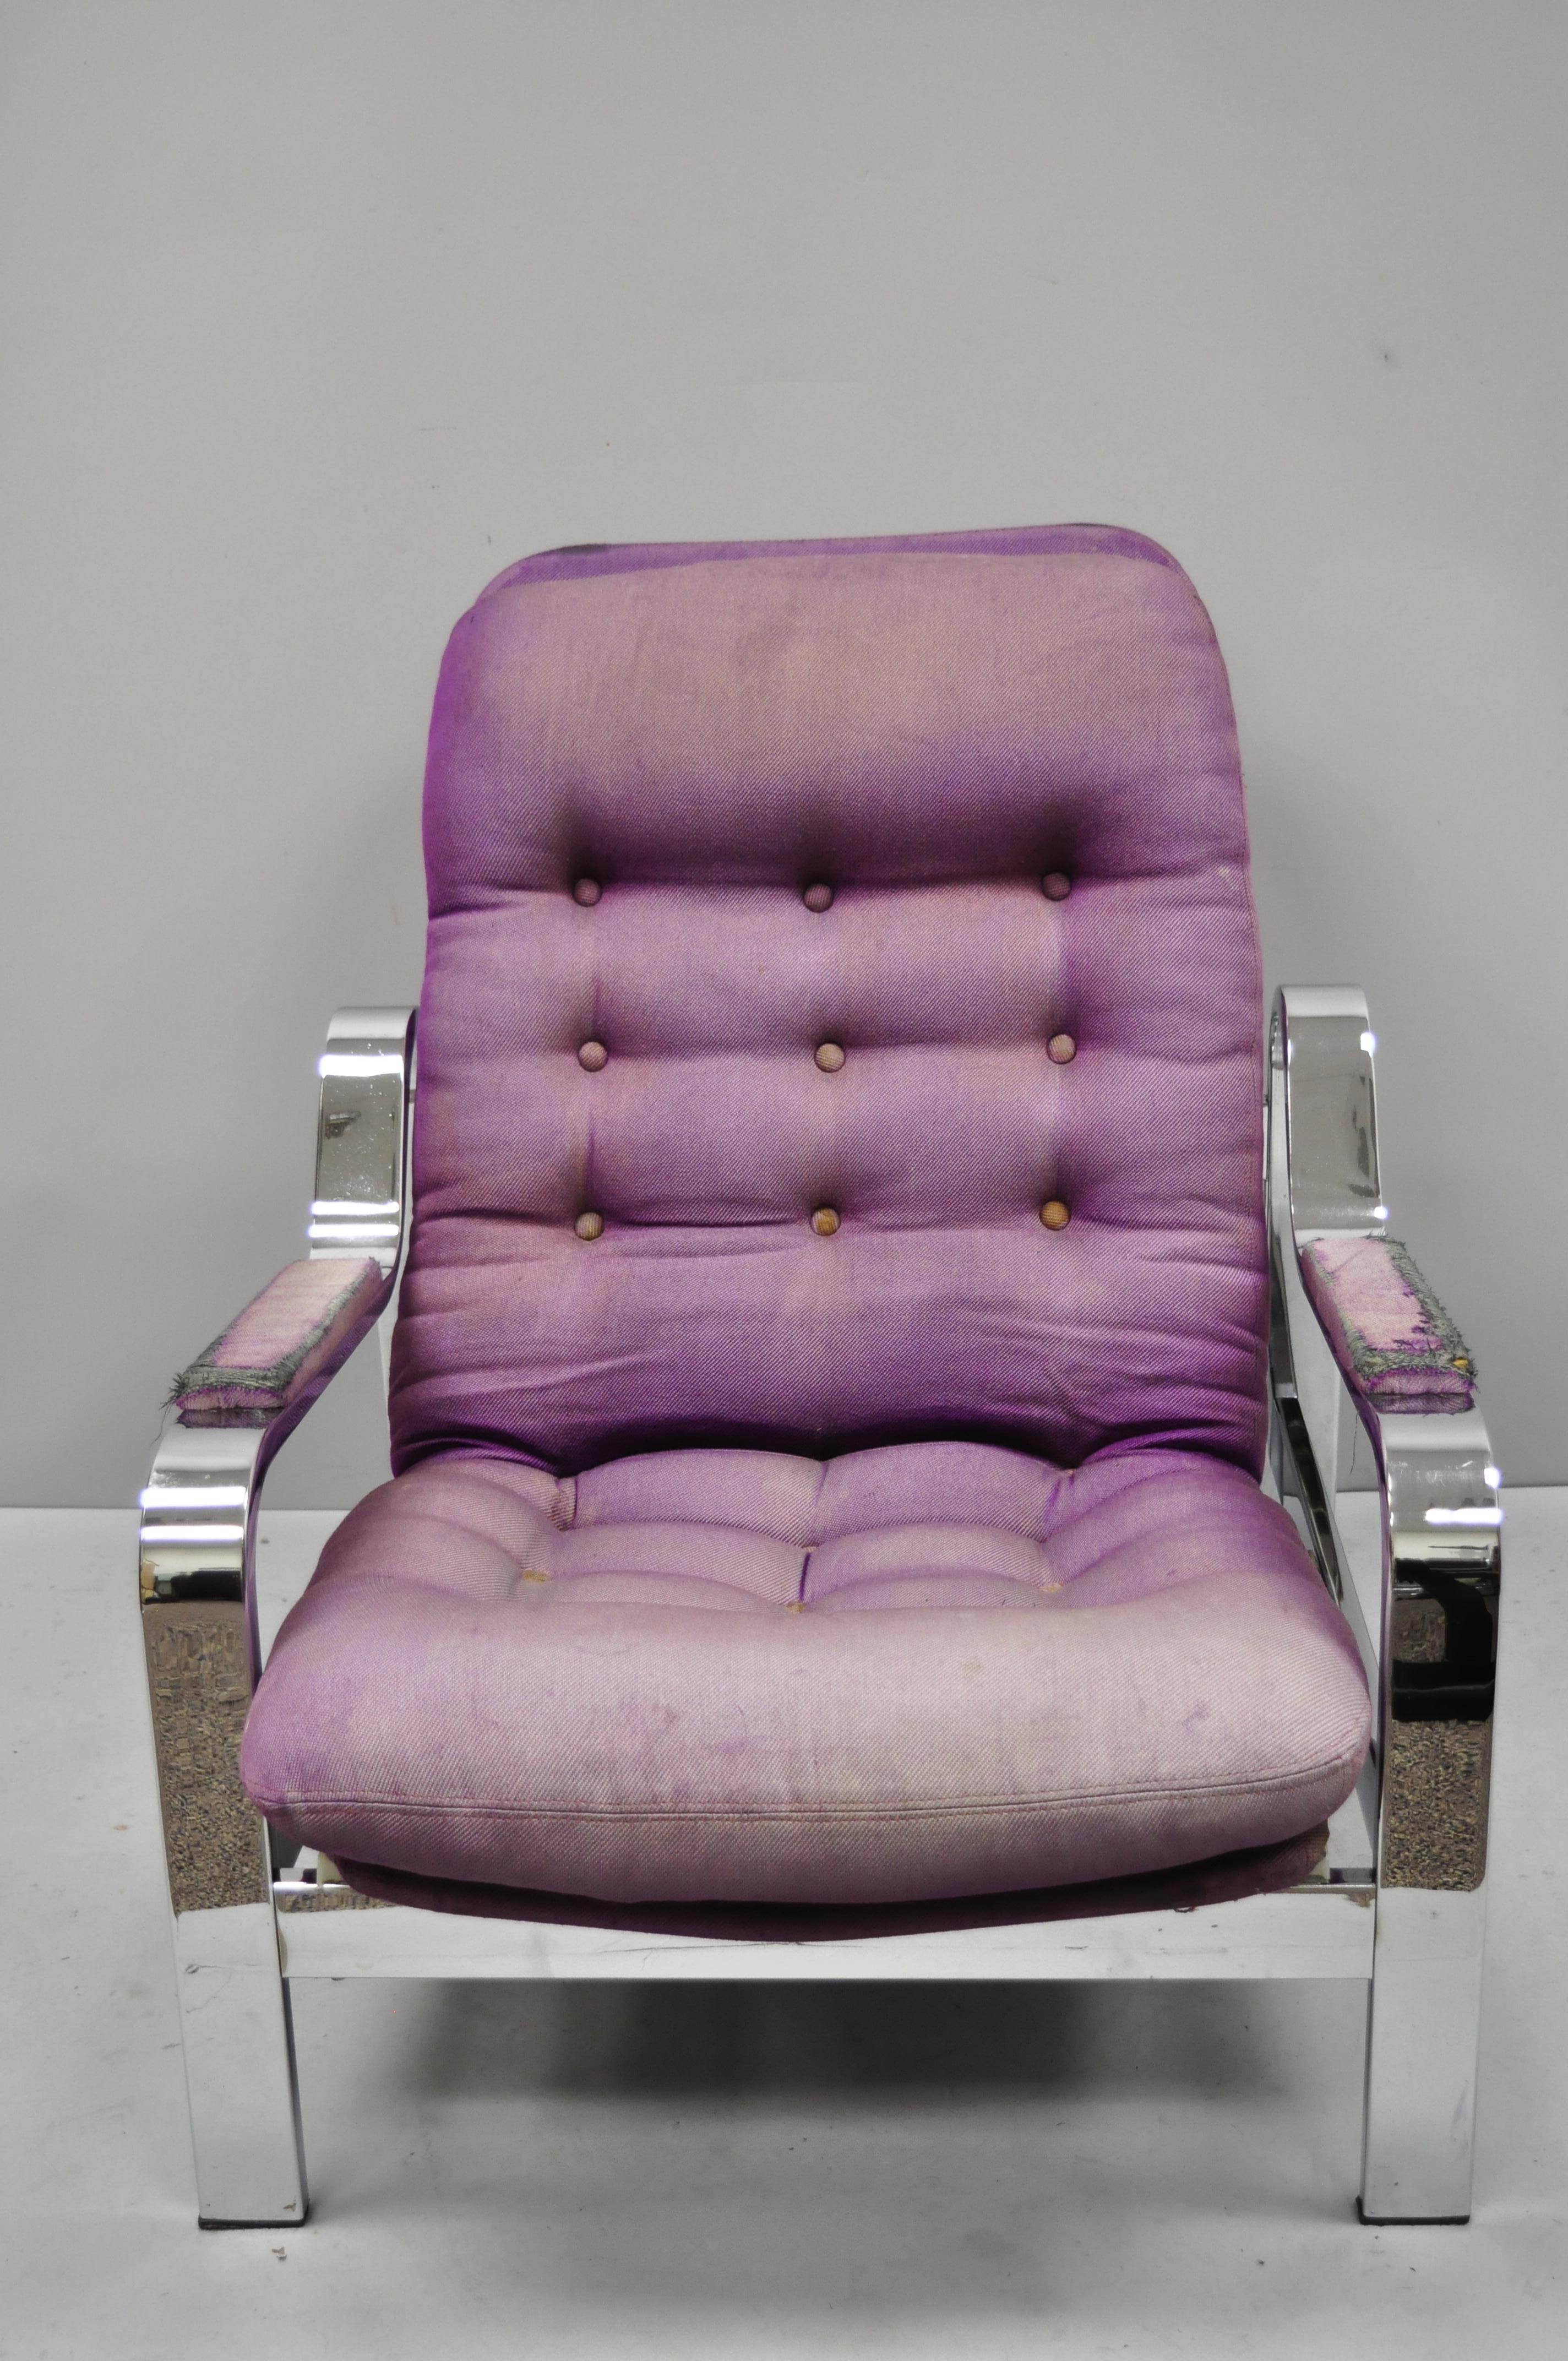 Vintage Mid-Century Modern chrome Selig recliner lounge chair after Milo Baughman. Cet article se caractérise par un cadre inclinable chromé élégant, des accoudoirs rembourrés, un très bel article vintage, un style et une forme remarquables, vers